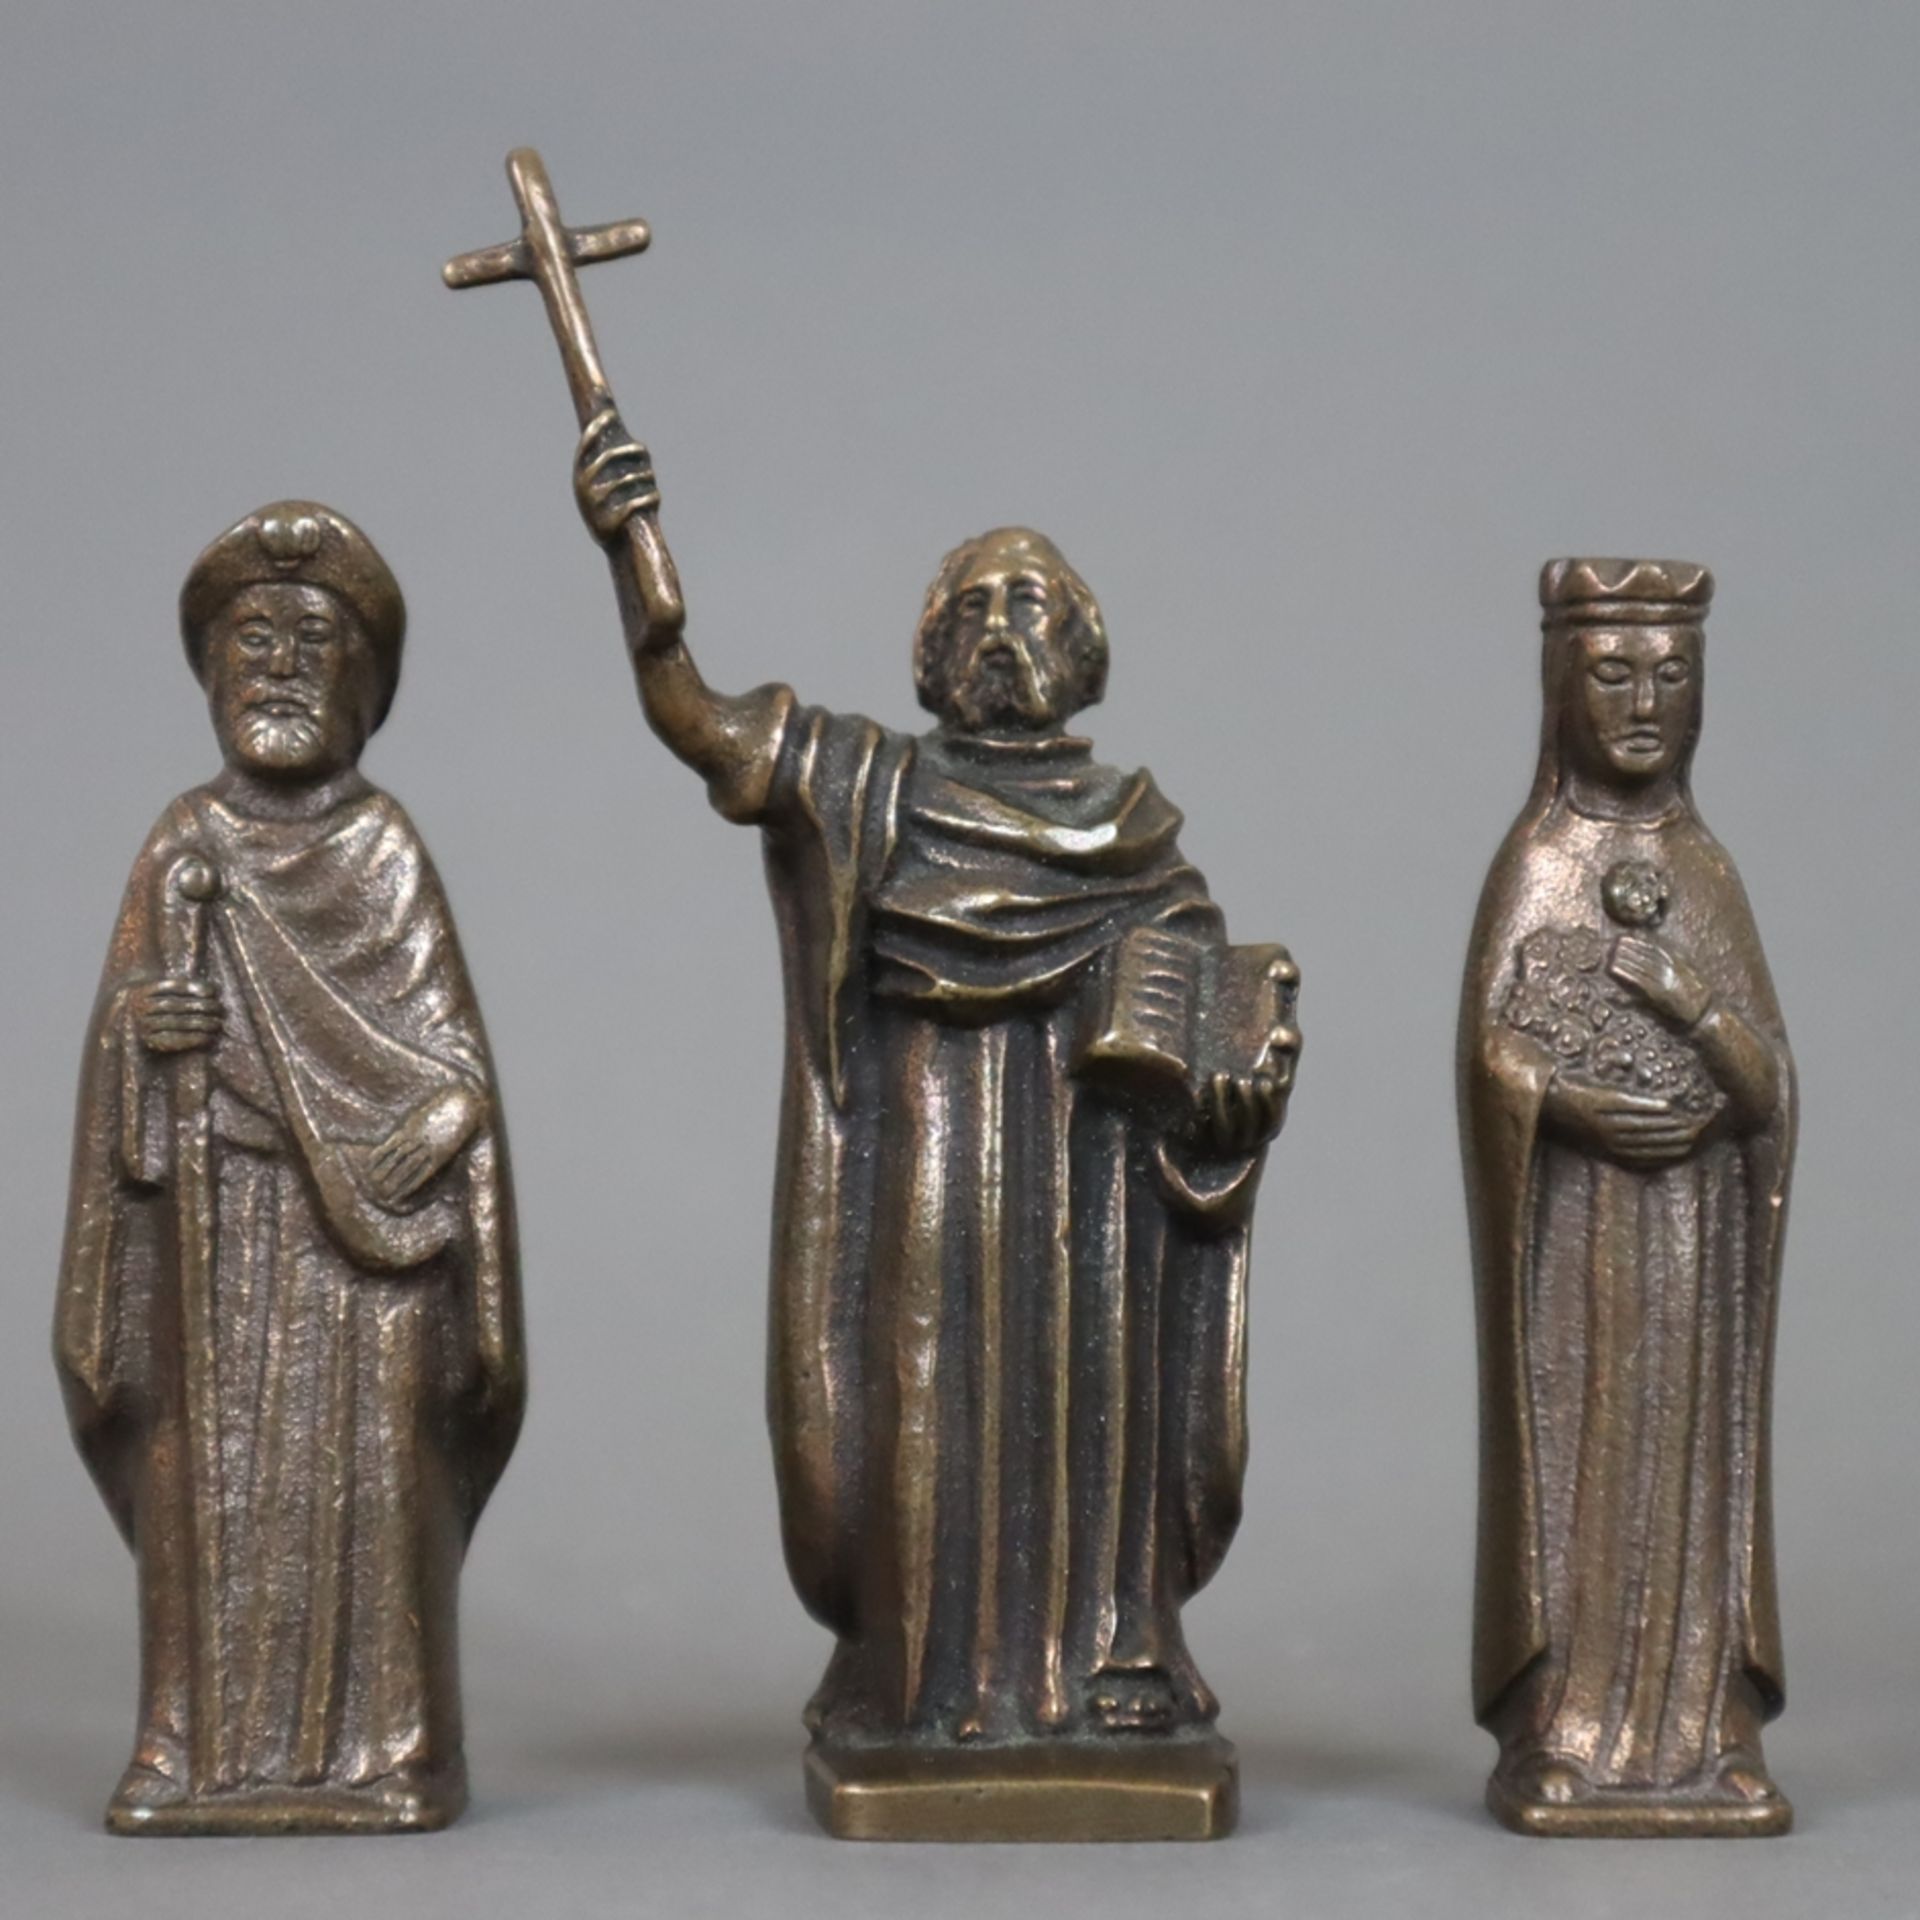 Sechs Miniaturfiguren - 20.Jh., Bronze, braun patiniert, 1x Apostel Paulus, 3x Heiligenfiguren, rüc - Image 2 of 3